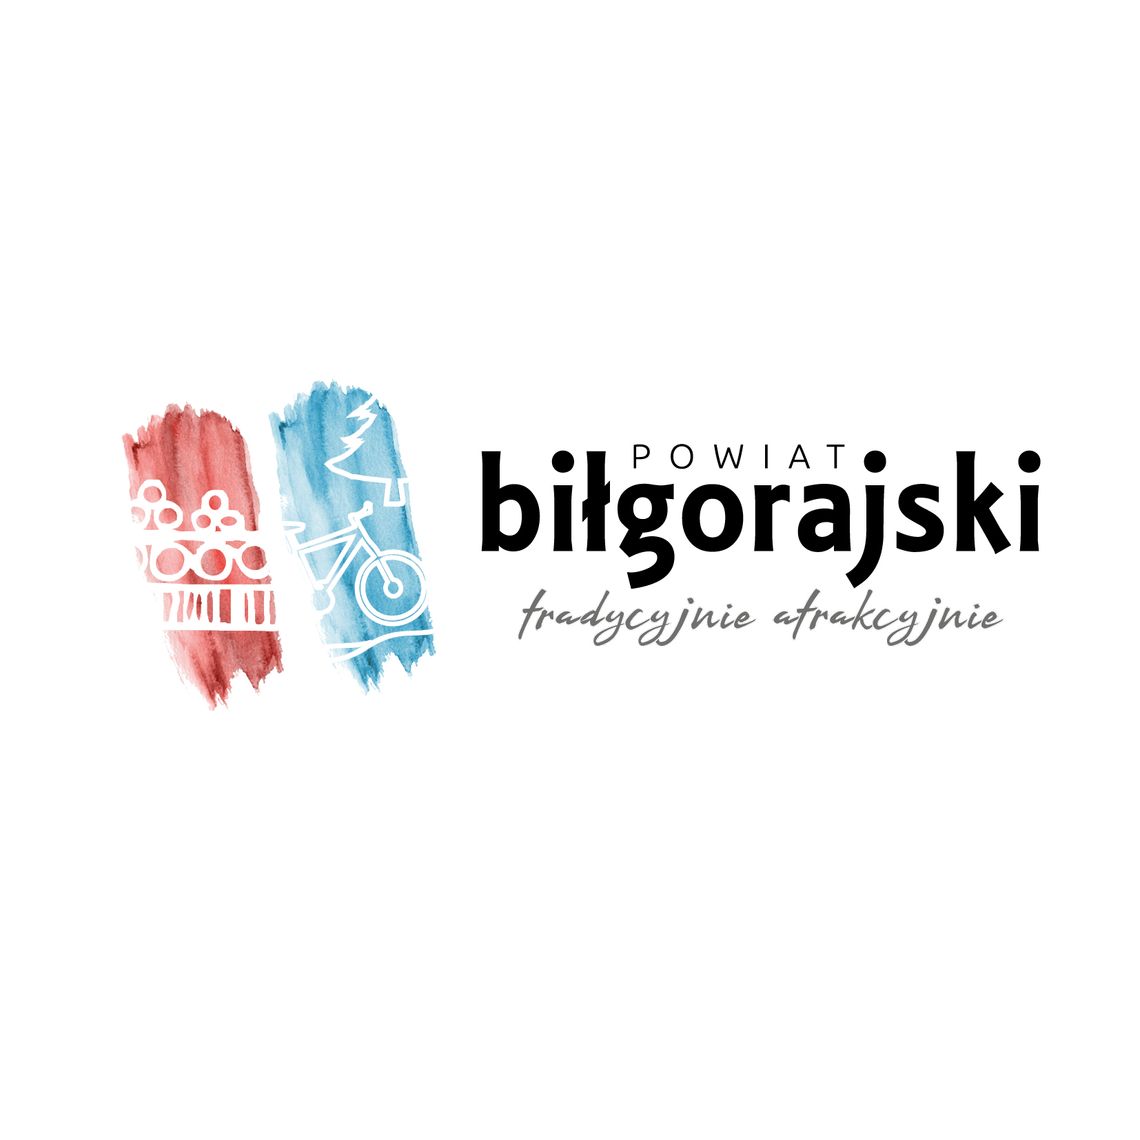 Nowy logotyp powiatu biłgorajskiego